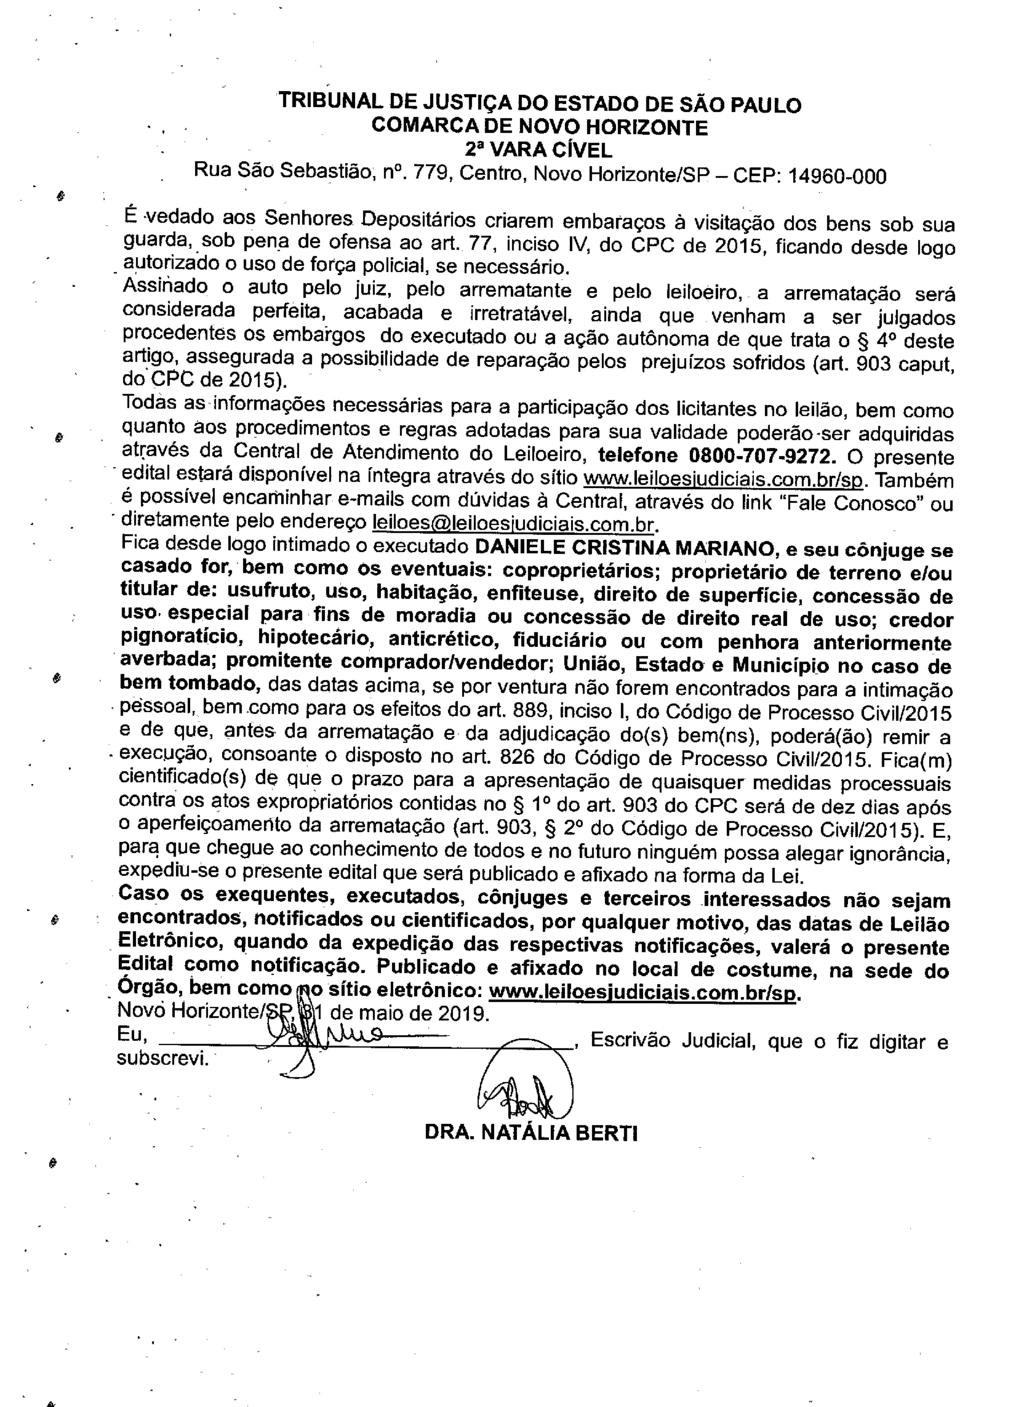 fls. 108 Este documento é cópia do original, assinado digitalmente por LUZIA REGIS DE OLIVEIRA DUARTE, liberado nos autos em 19/06/2019 às 13:14.